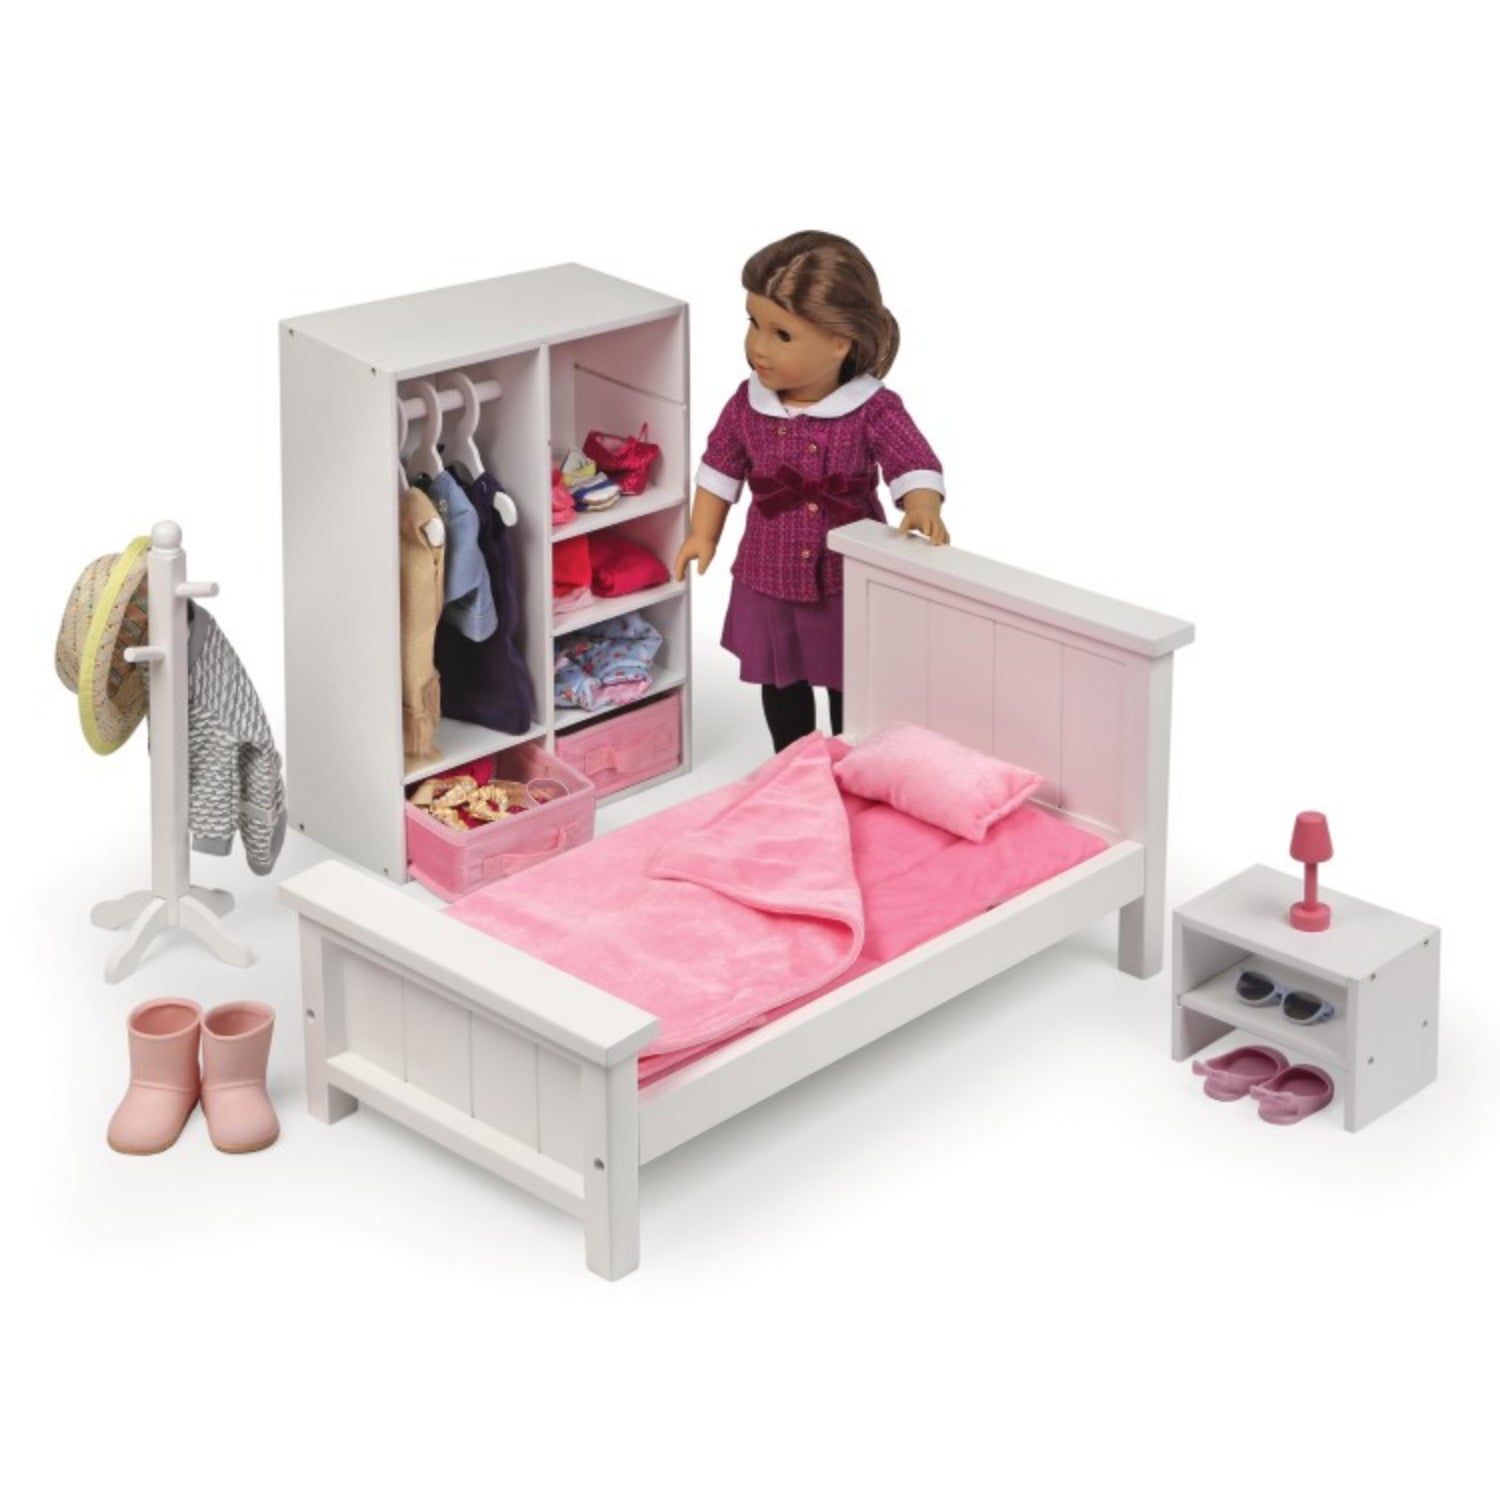 Badger Basket Bedroom Furniture Set for 18 inch Dolls – White/Pink